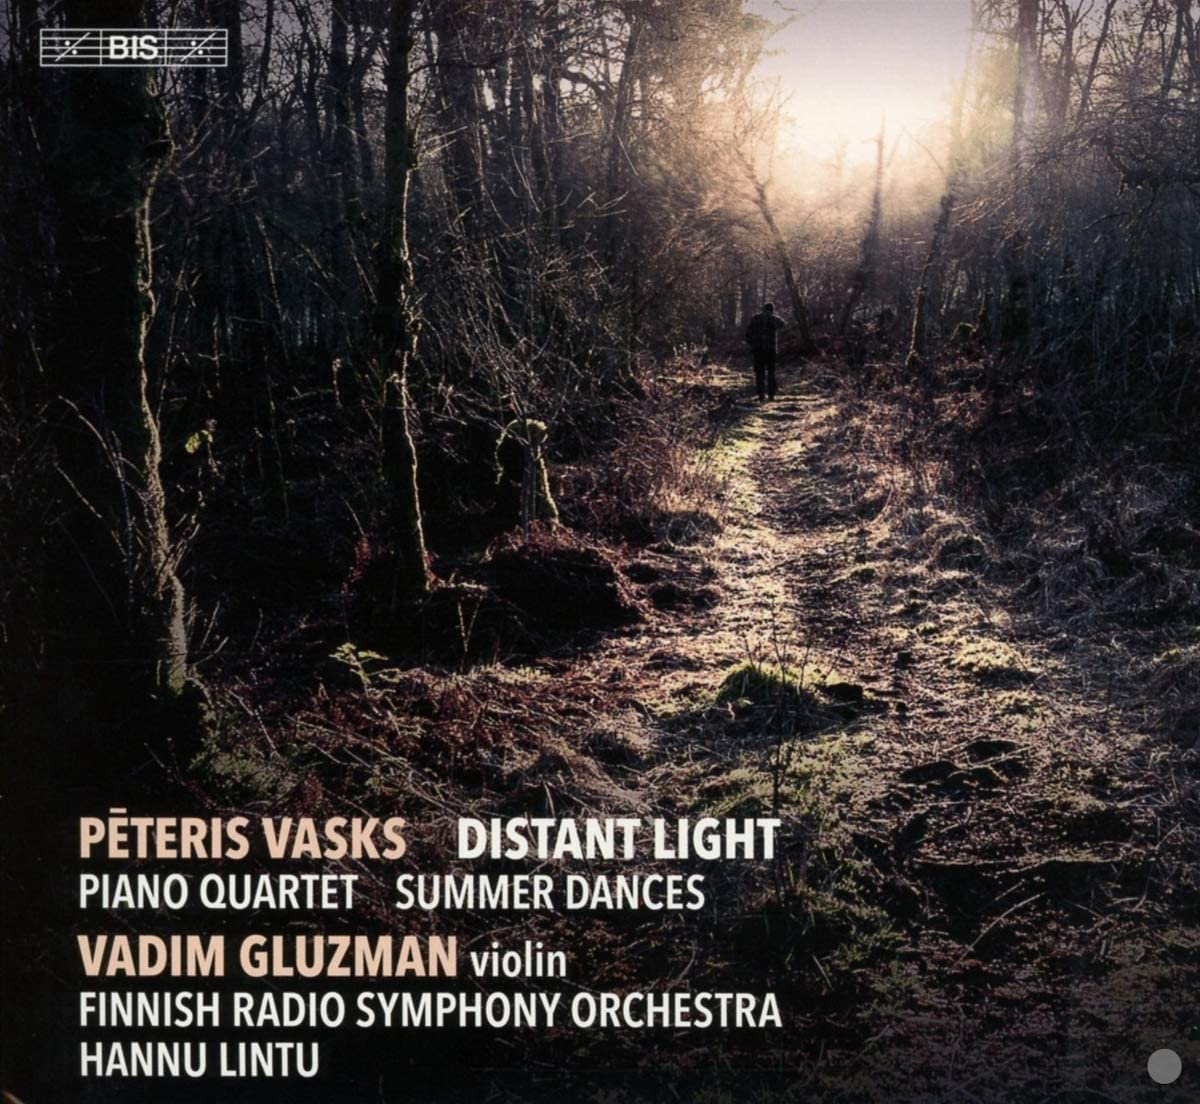 Review of VASKS Distant Light. Piano Quartet. Summer Dances (Lintu)